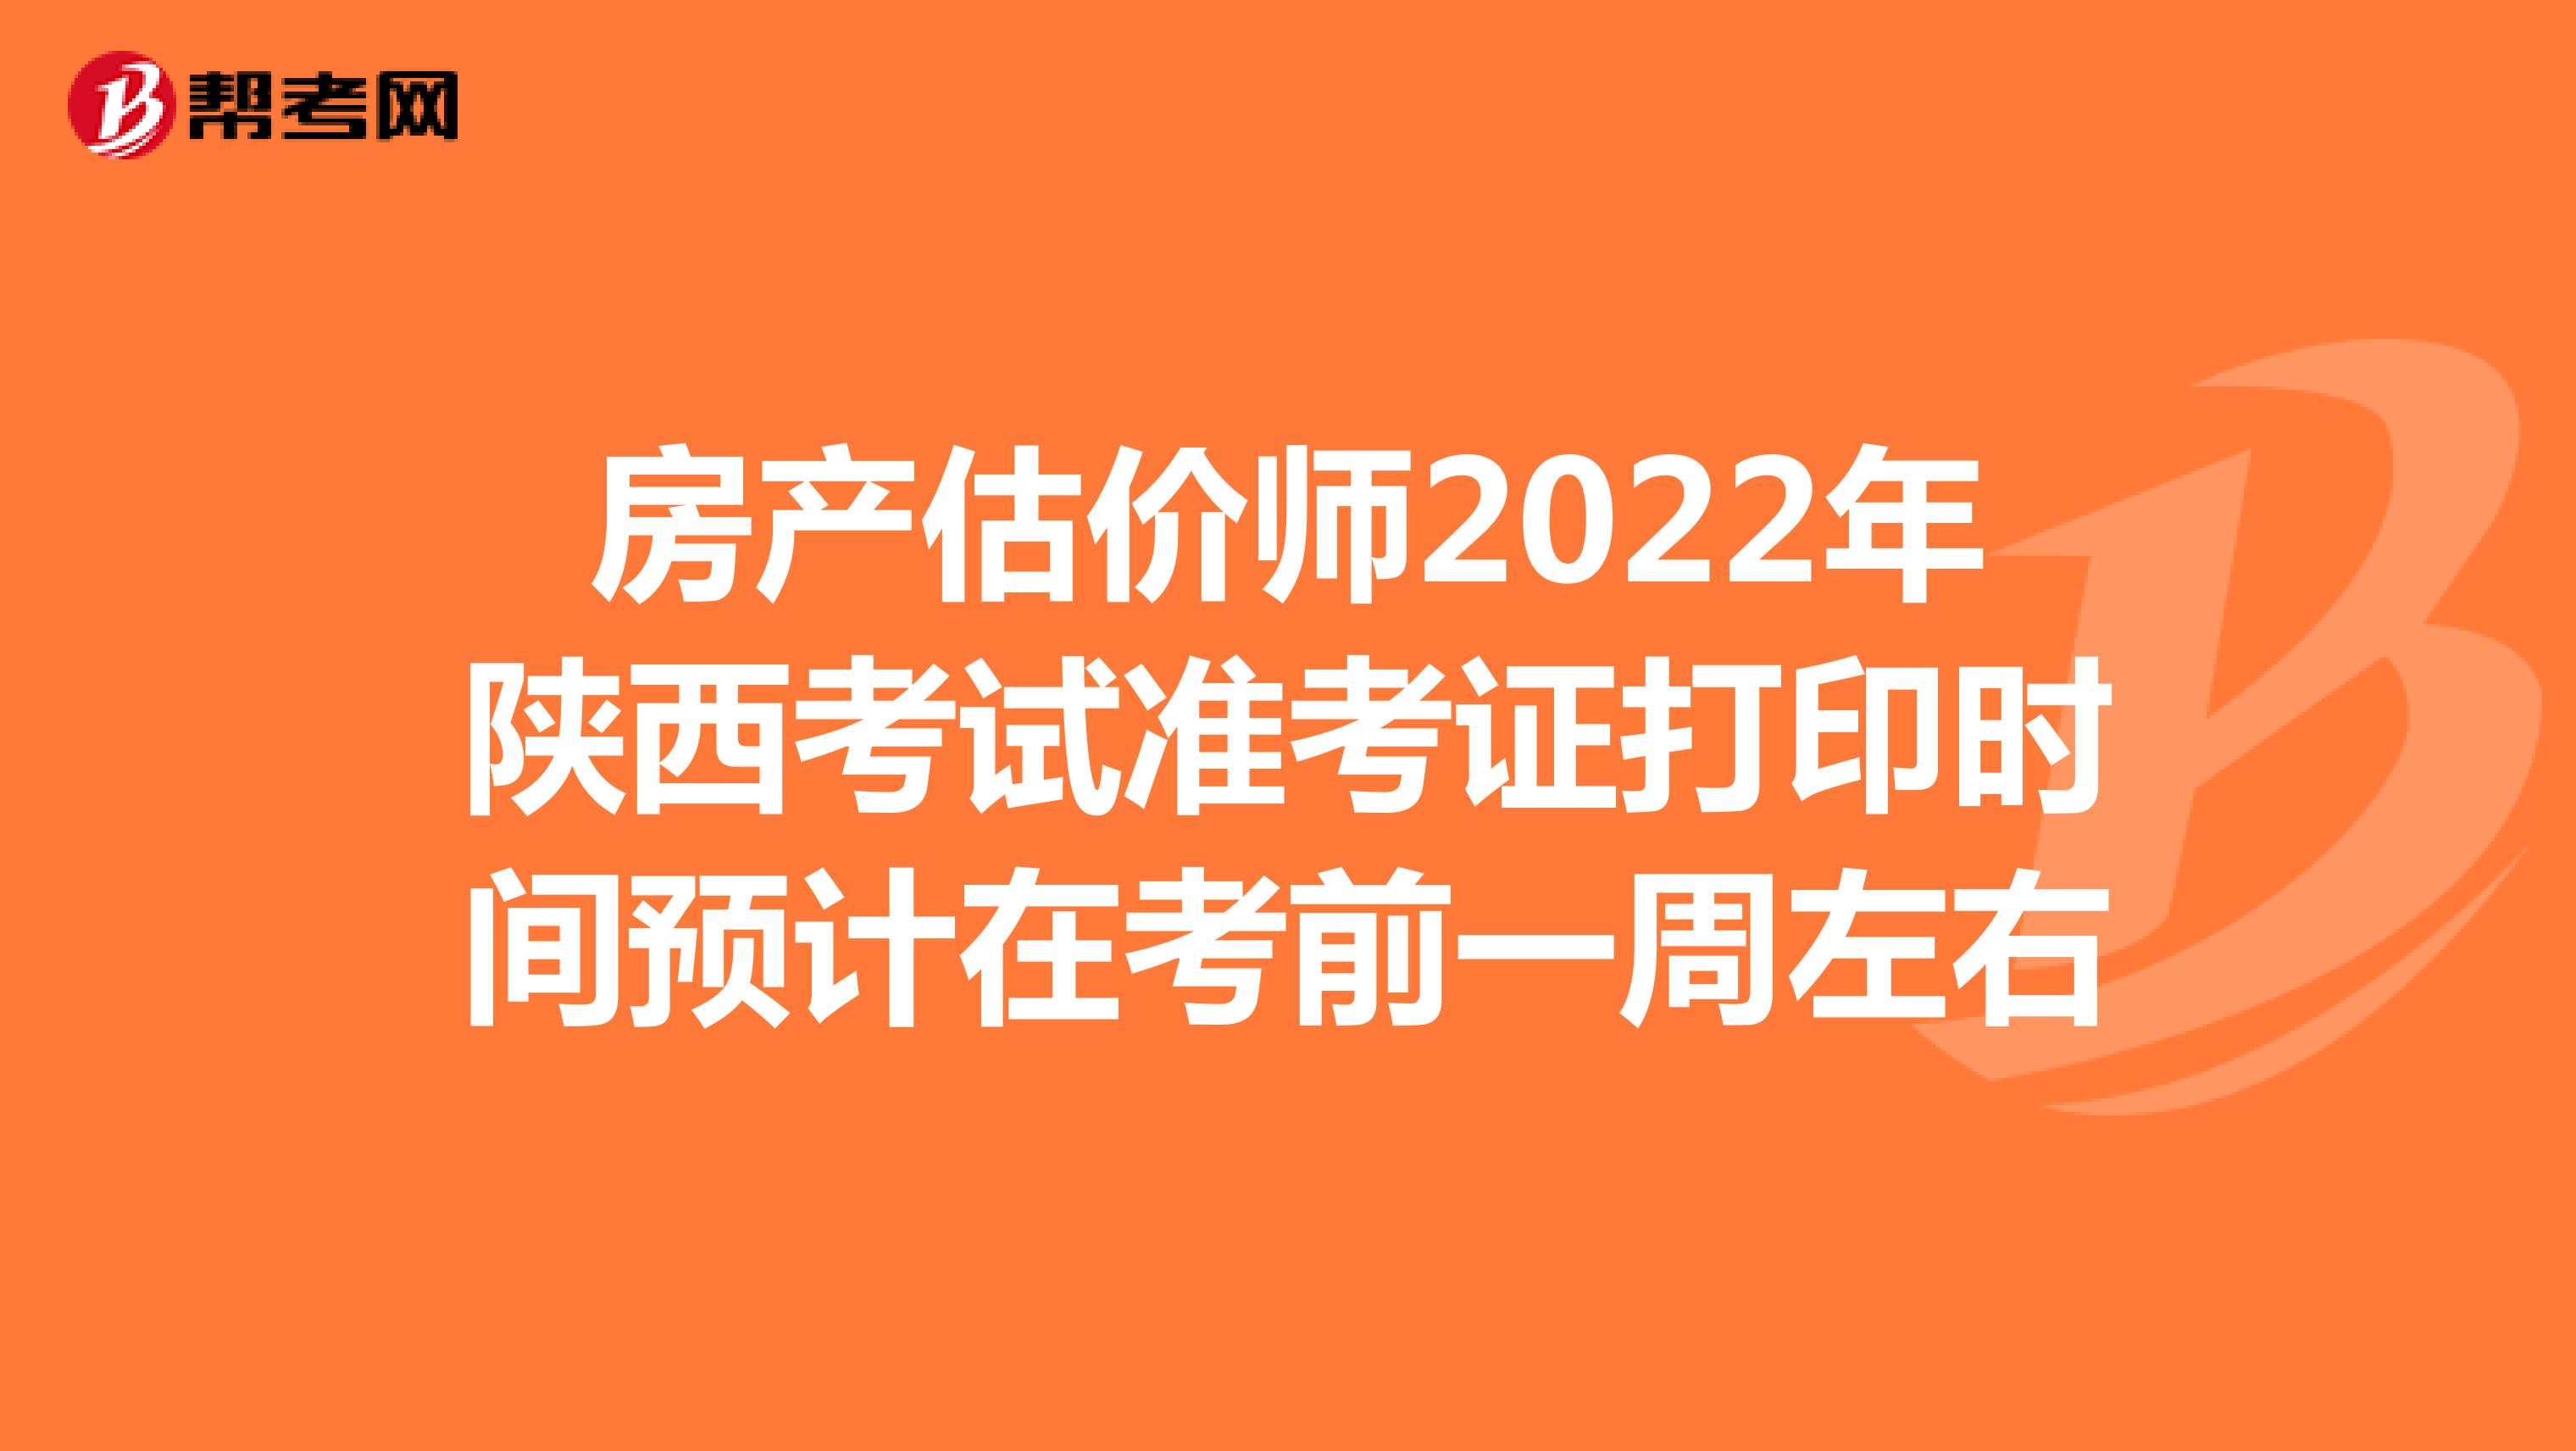 房产估价师2022年陕西考试准考证打印时间预计在考前一周左右